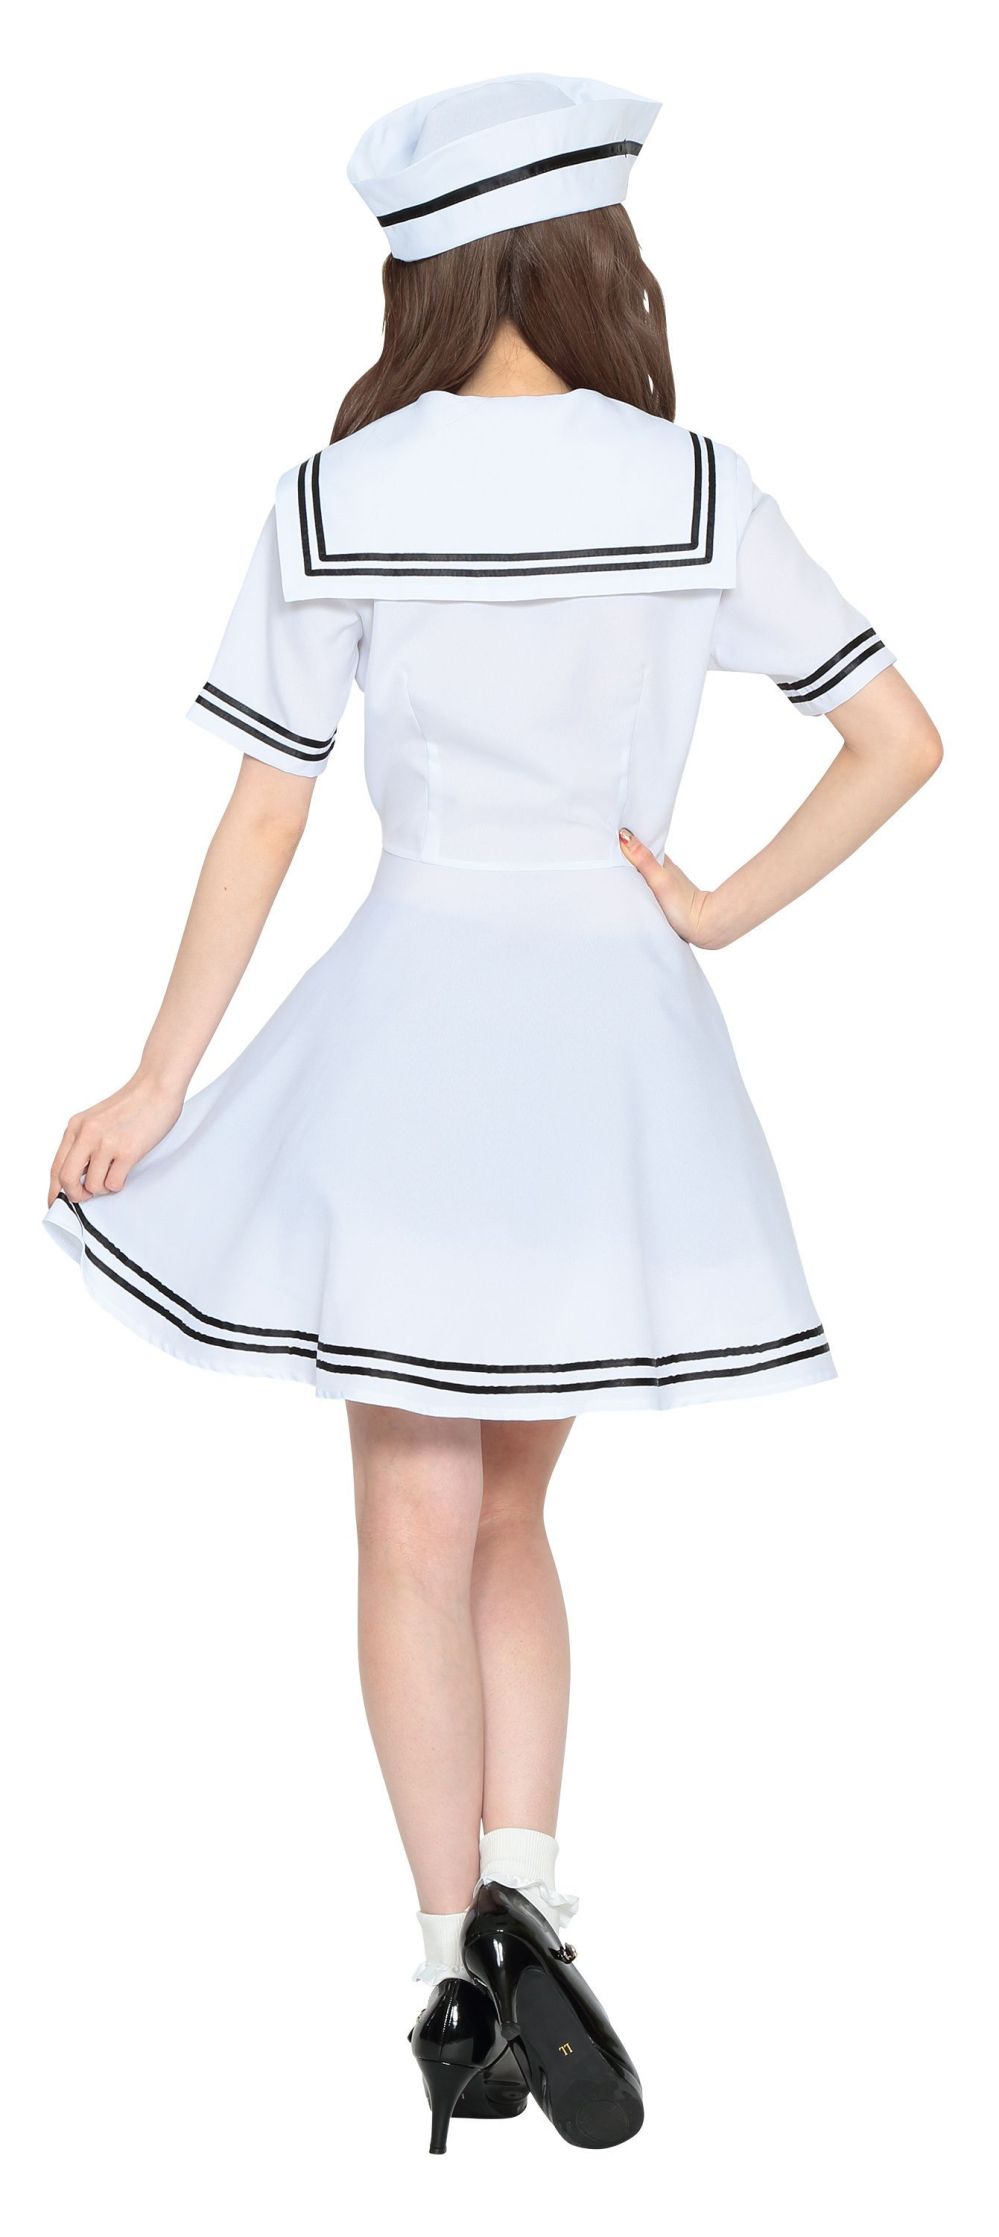 ユニフォーム1 クリアストーンのセーラー服 学生服